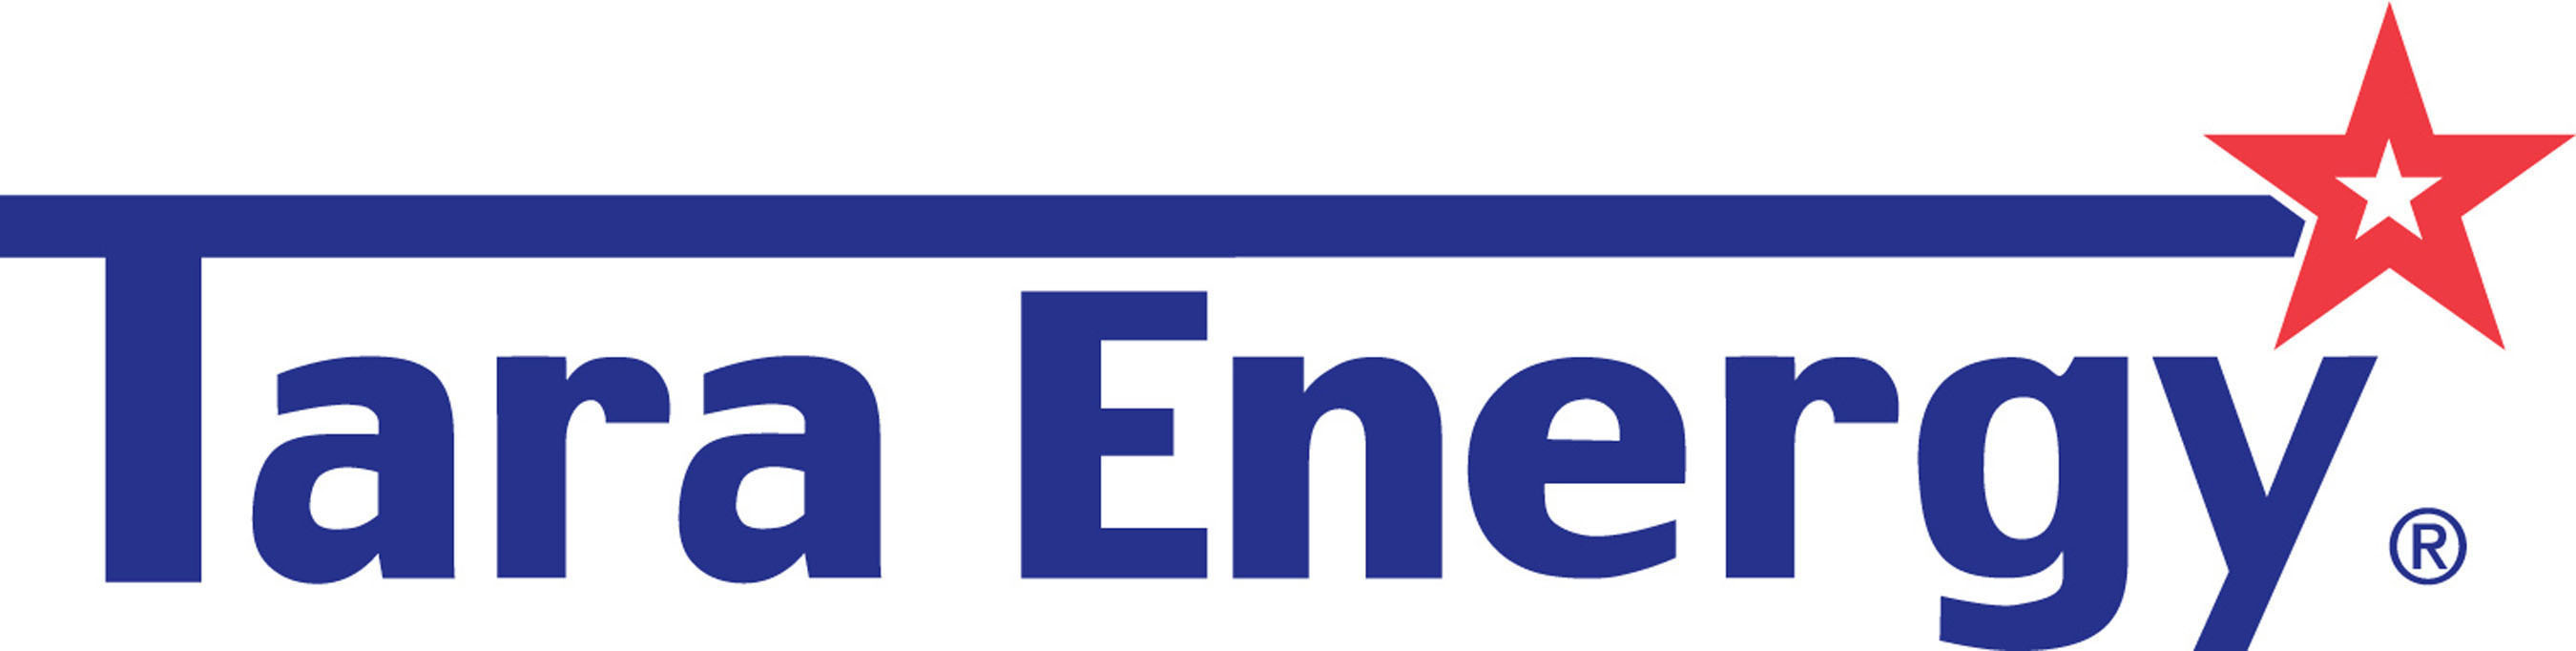 Tara Energy logo.